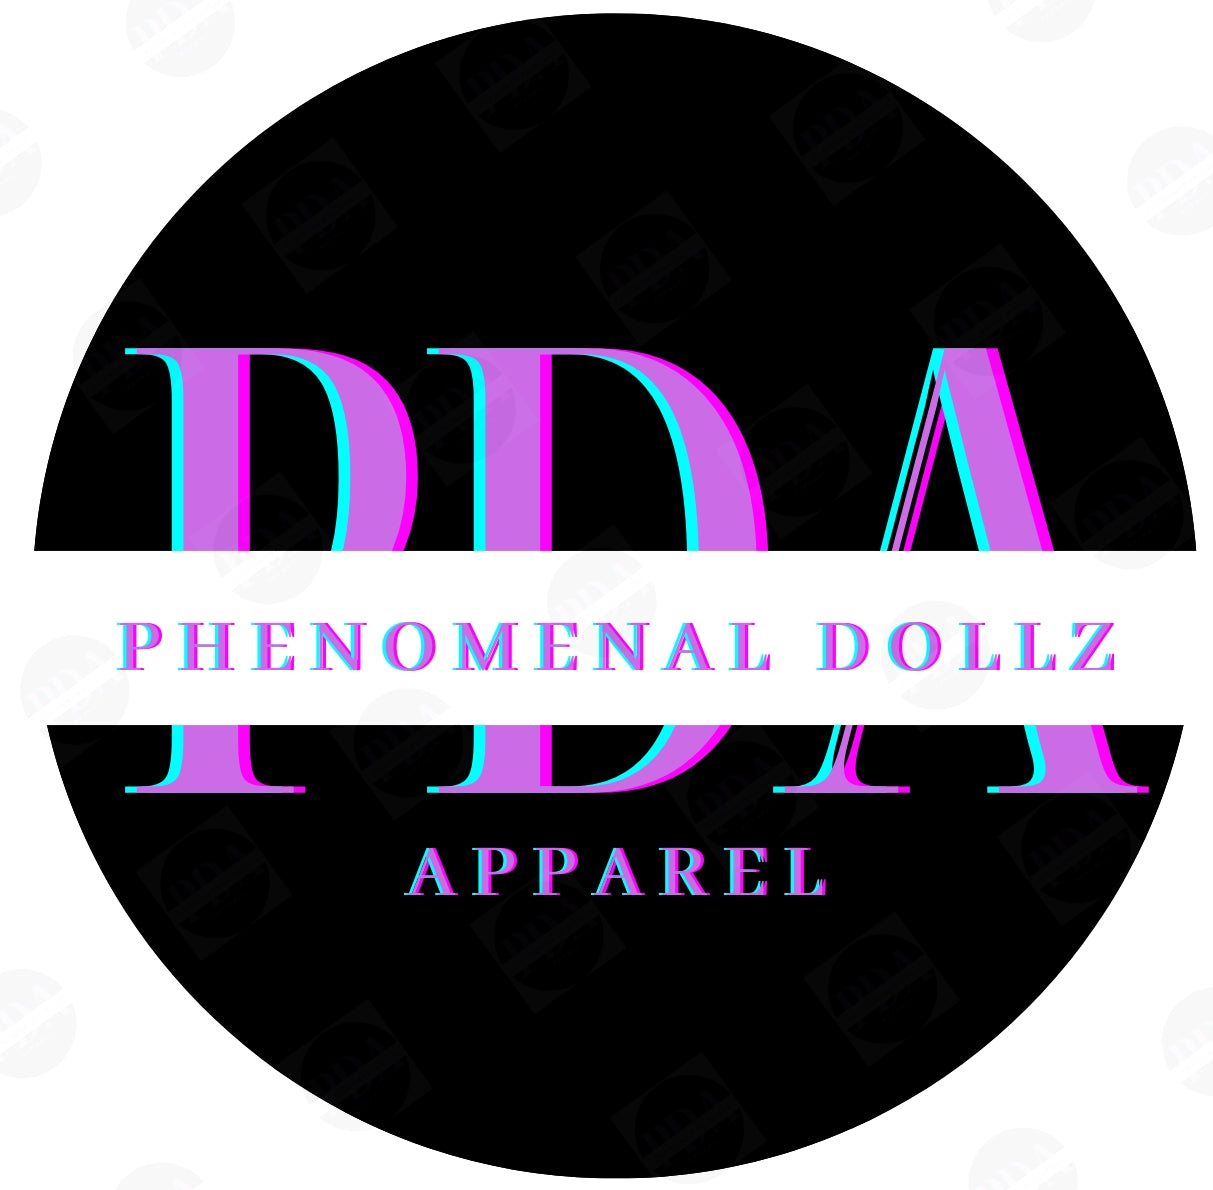 Phenomenal Dollz Apparel